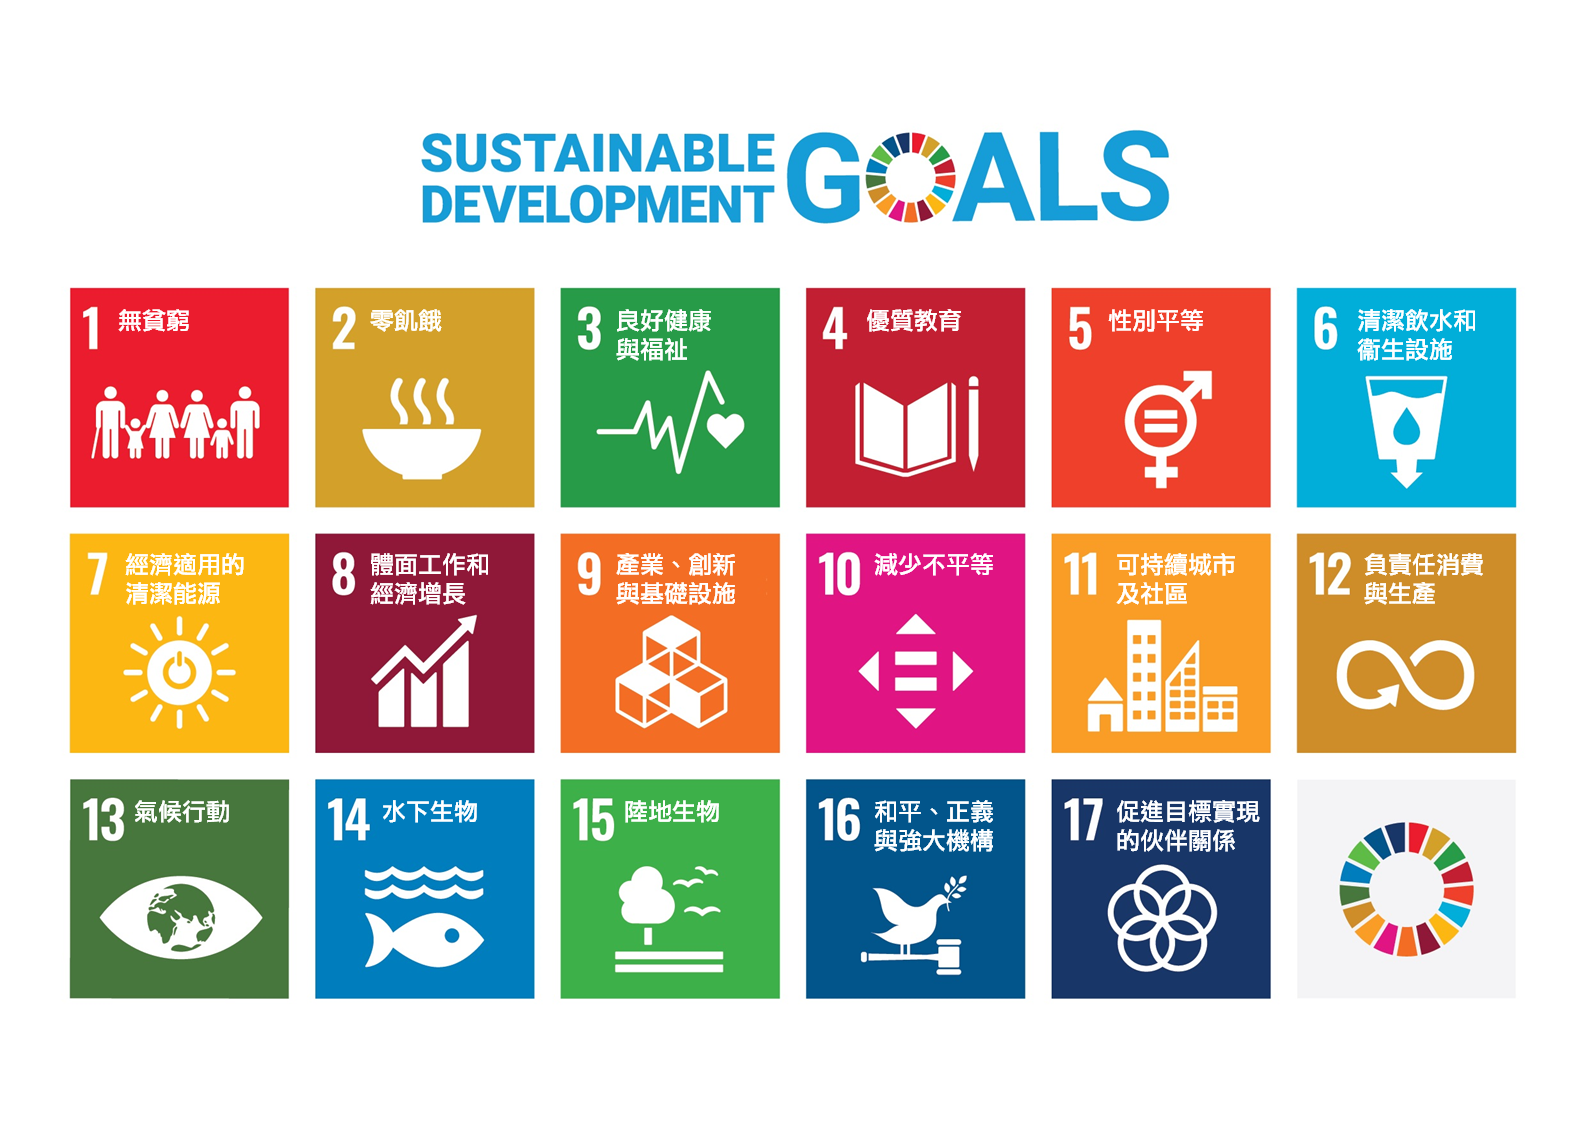 可持續發展目標(SDGs)概覽系列-Product - 教育資源網| 聯合國兒童基金香港委員會UNICEF HK Education Web  Portal